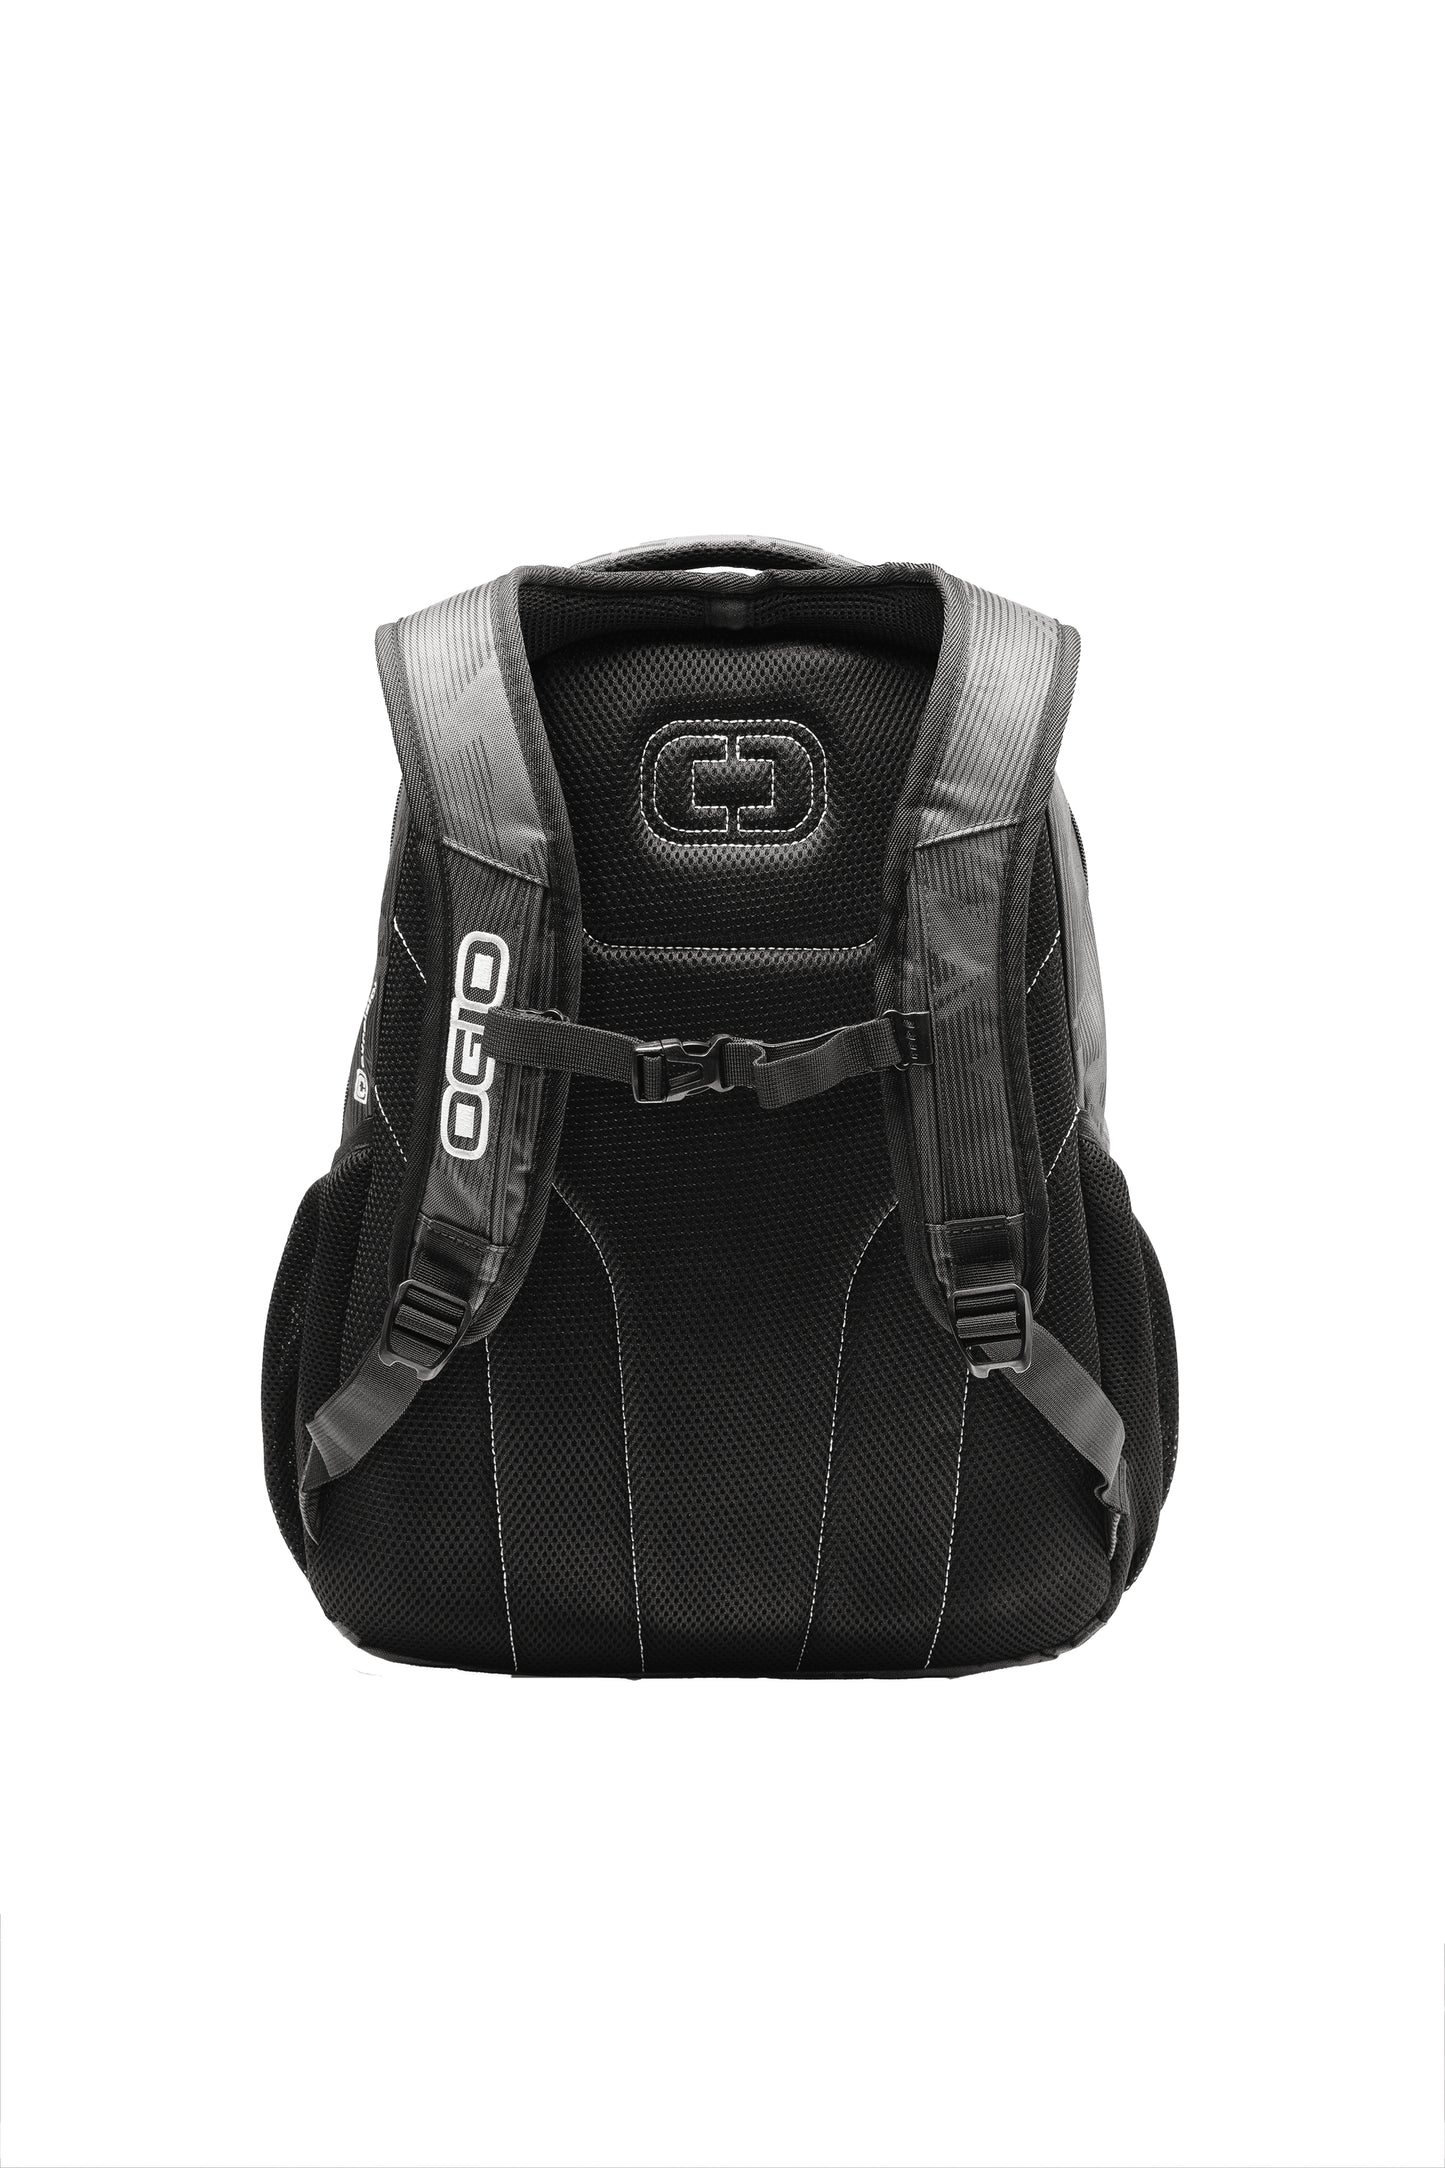 OGIO Excelsior Backpack